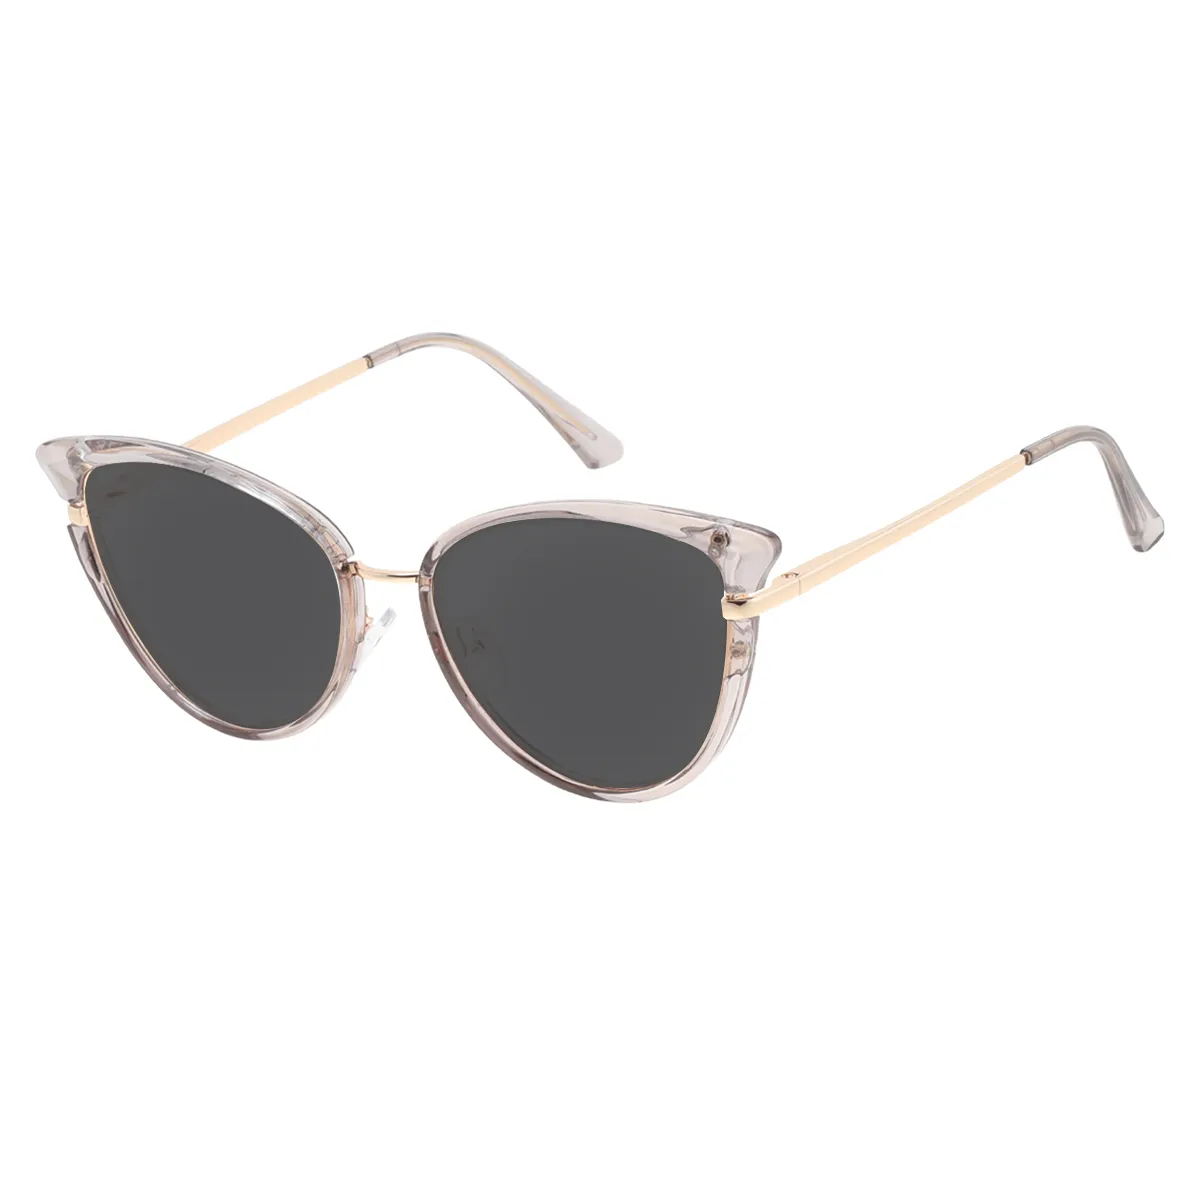 Fallon - Cat-eye Gray Sunglasses for Women